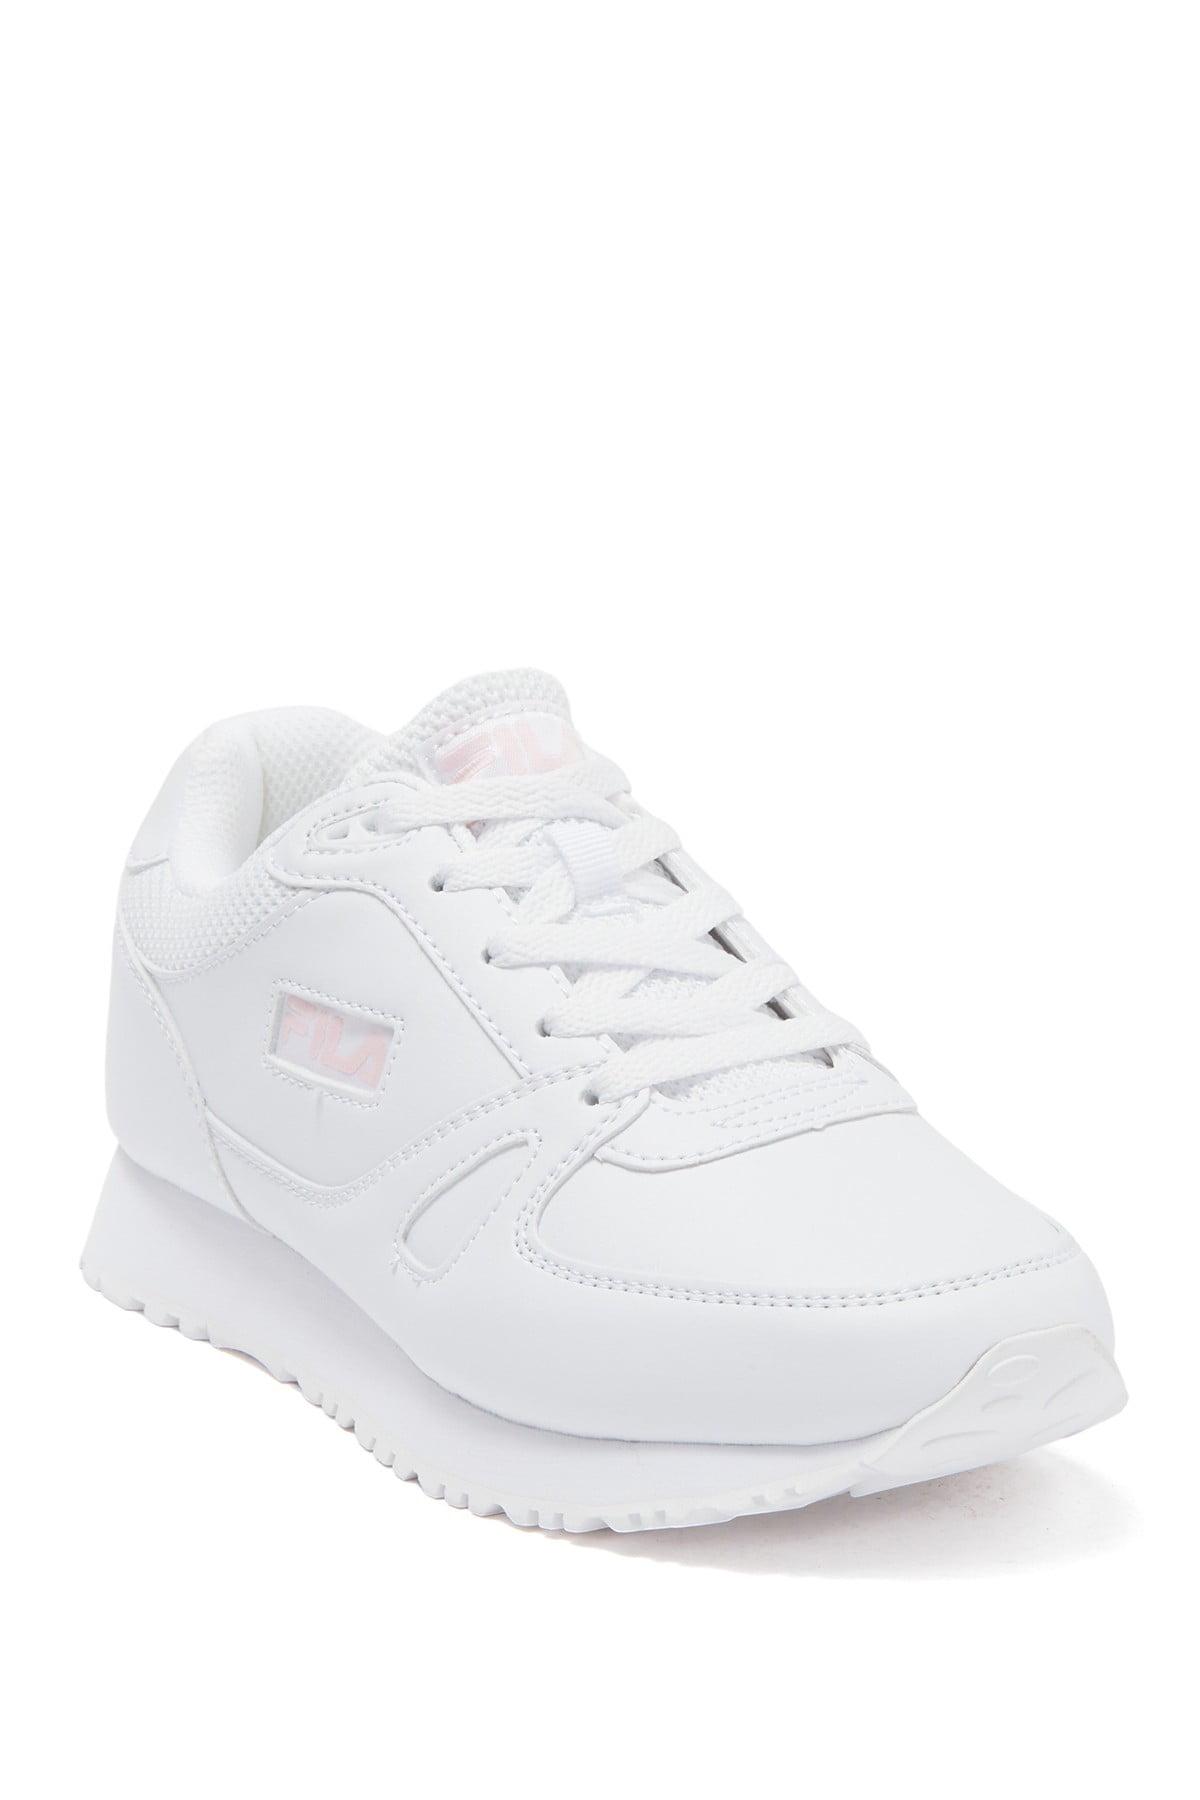 Fila Cress 2020 Sneaker in White - Lyst